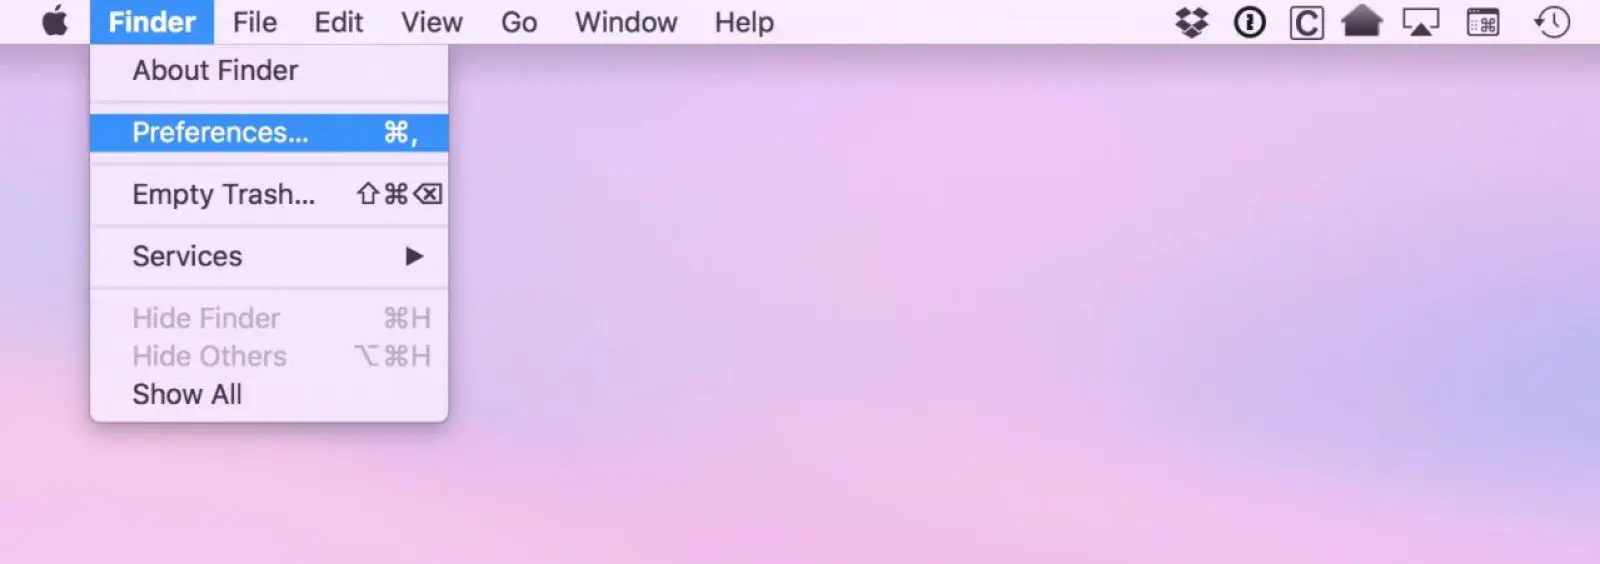 Как отключить предупреждения iCloud Drive при перемещении файлов на Mac